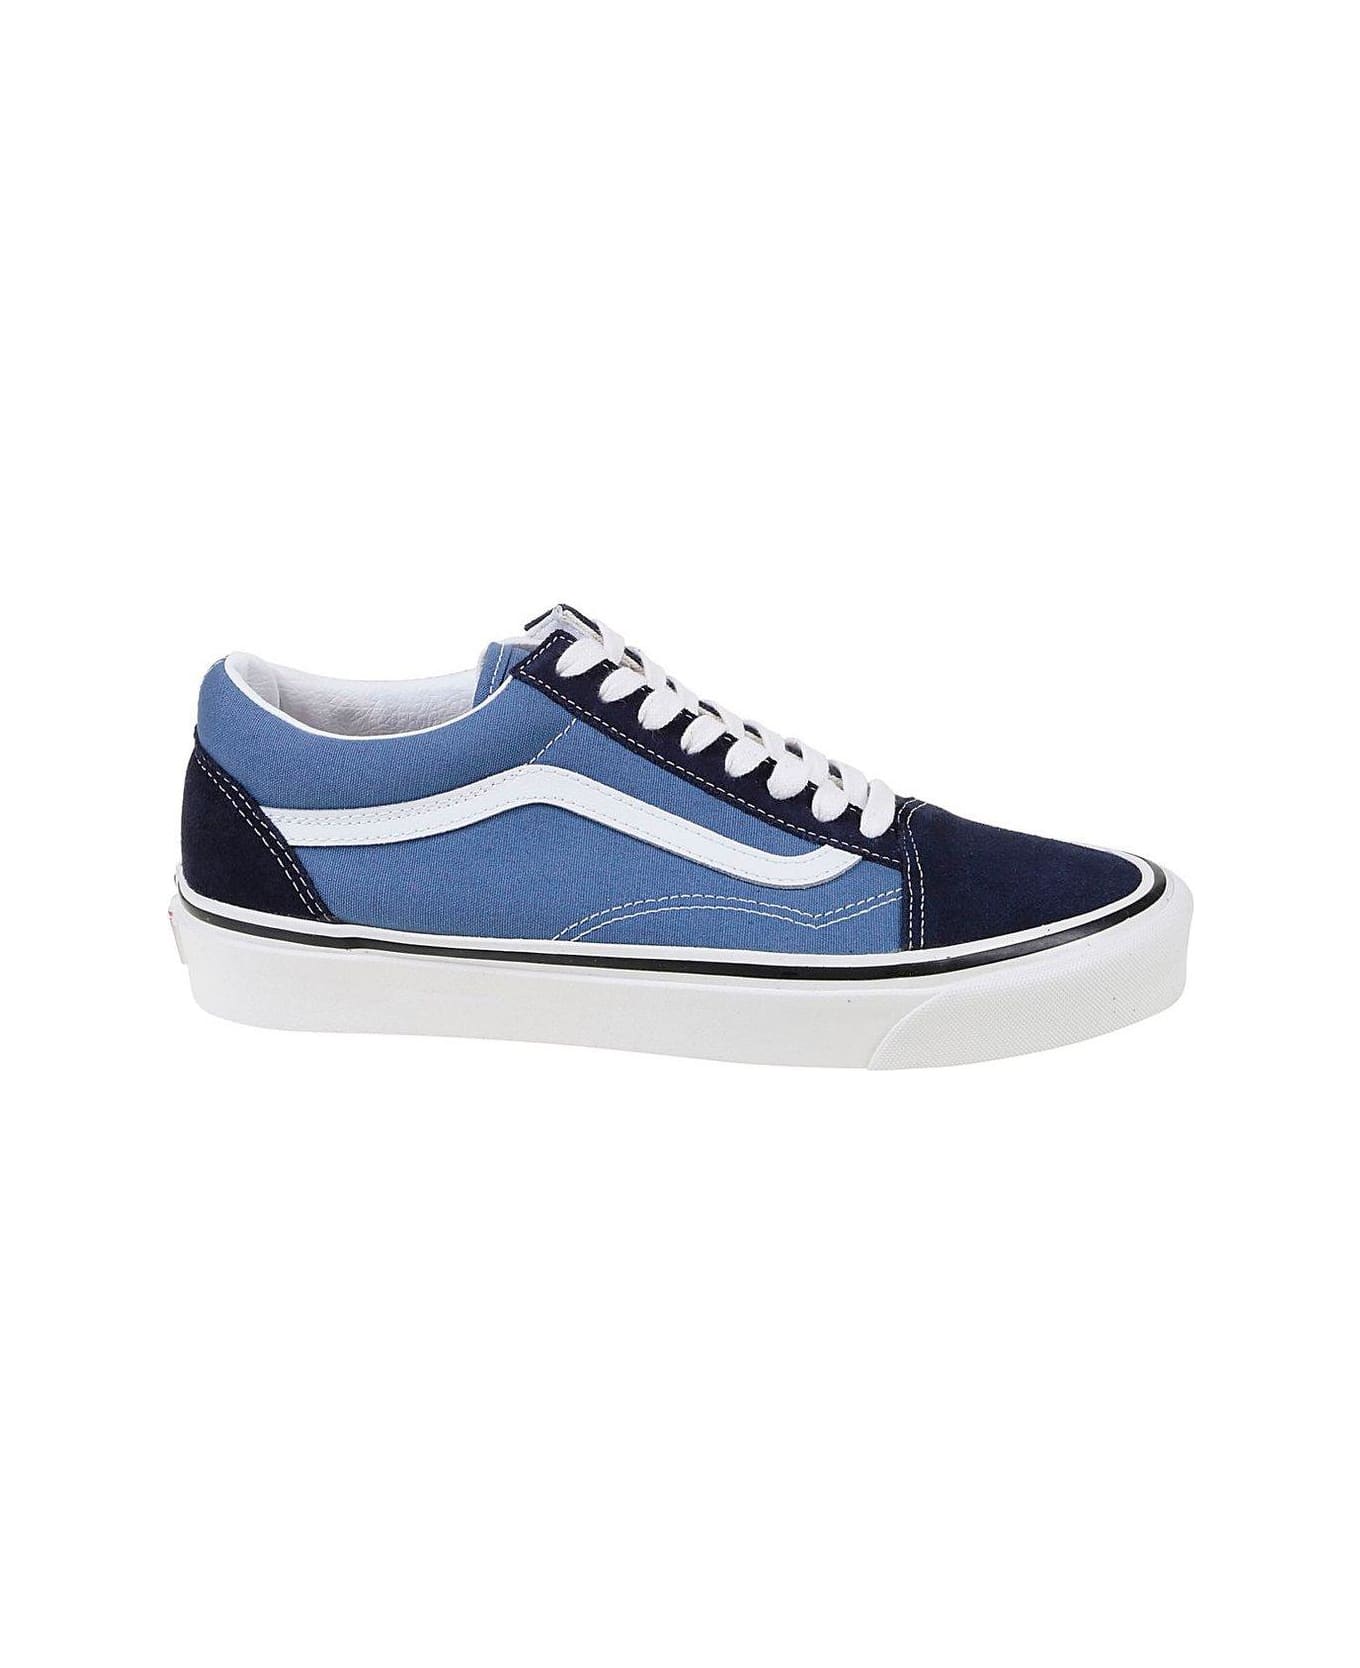 Vans Old Skool 36 Dx Lace-up Sneakers - LIGHT BLUE スニーカー